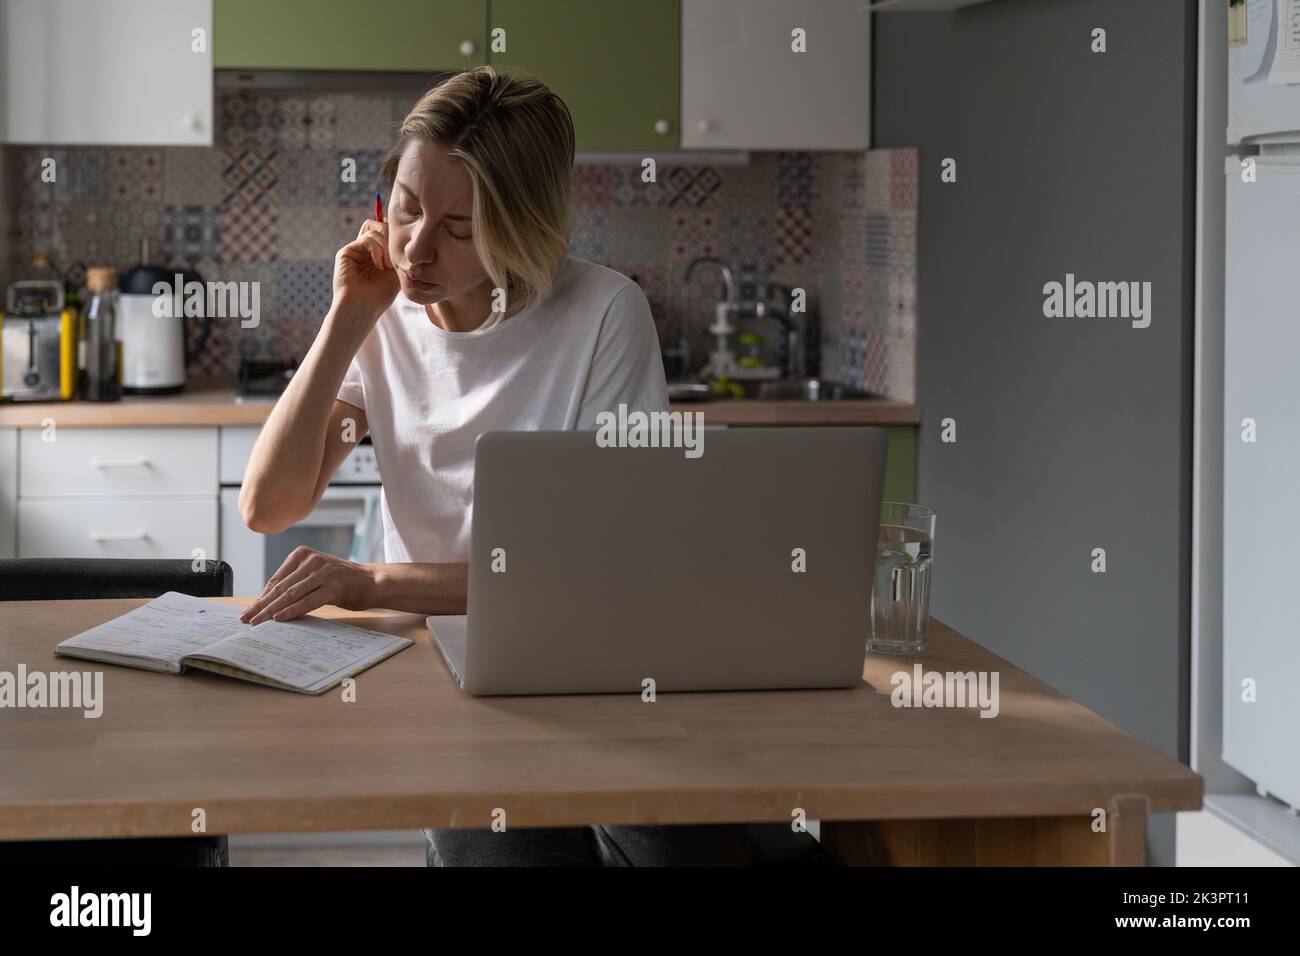 Une femme d'âge moyen très occupée fait des marques dans un ordinateur portable et cherche un emploi rémunéré via un ordinateur portable dans la cuisine. Banque D'Images